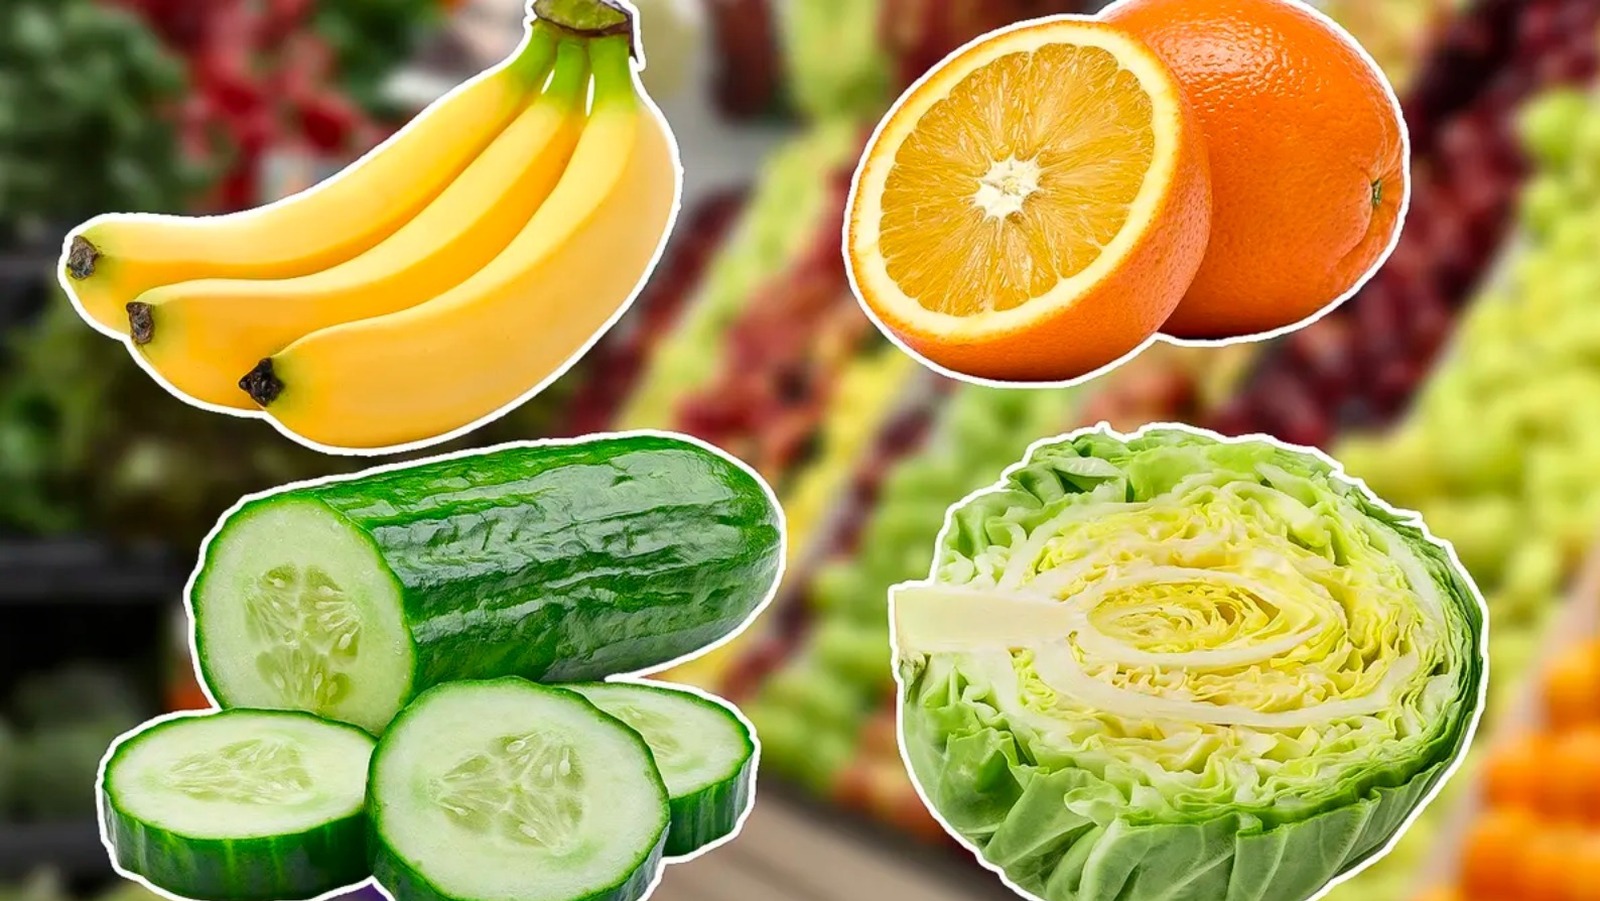 Fresh Fruit, Vegetables, Salads & Juices - Pay Less Super Markets